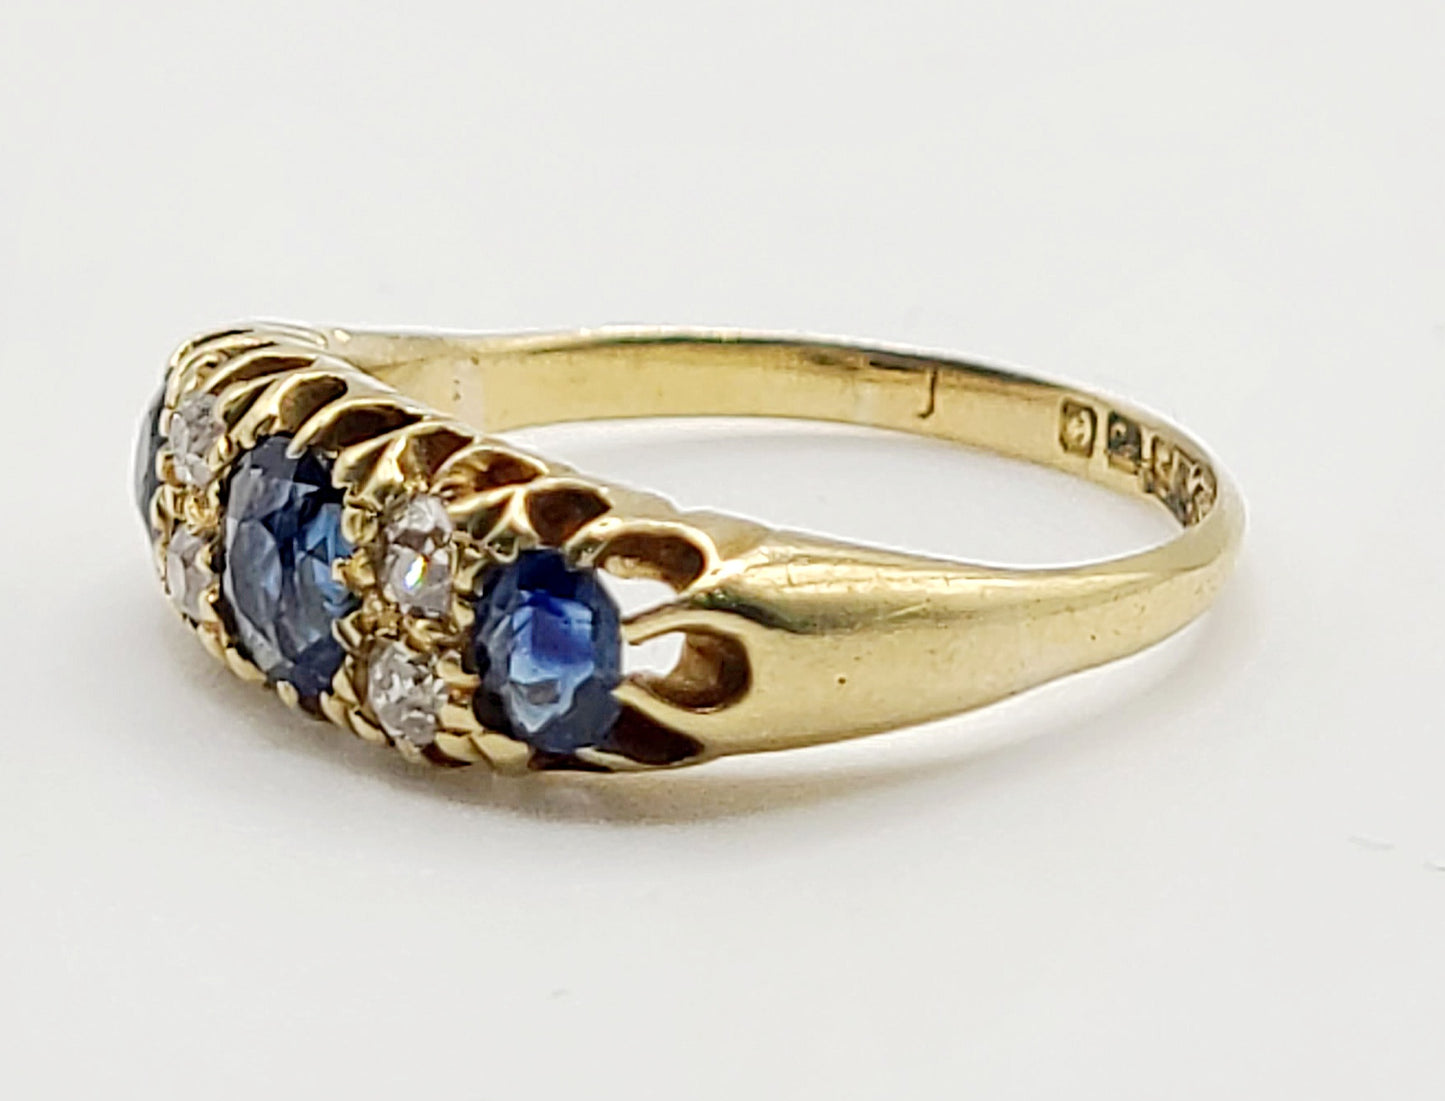 Victorian Sapphire & Diamond Ring c1880